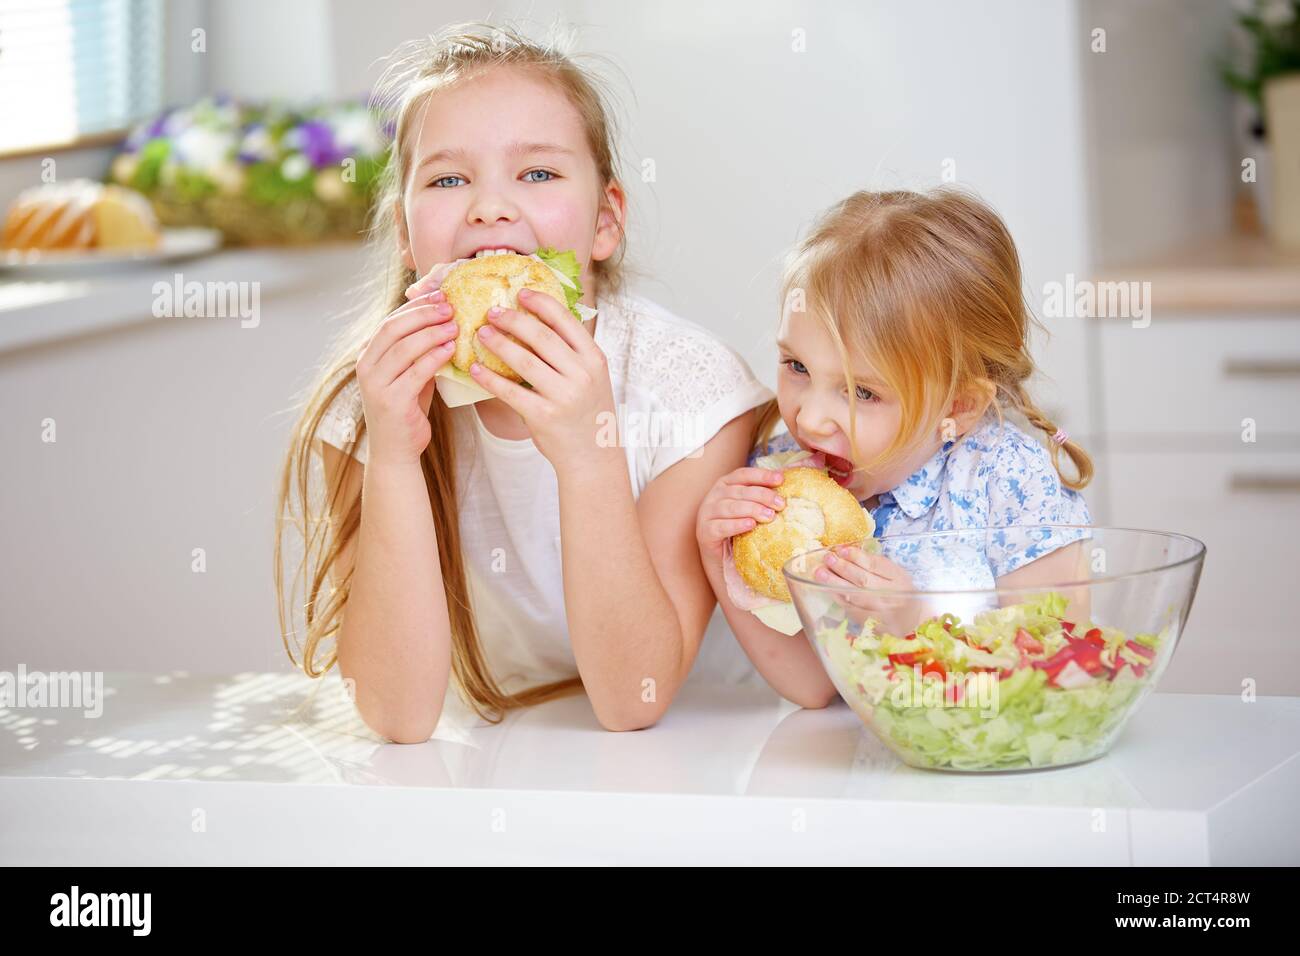 Deux enfants mangent des sandwiches pour le petit-déjeuner dans la cuisine Banque D'Images